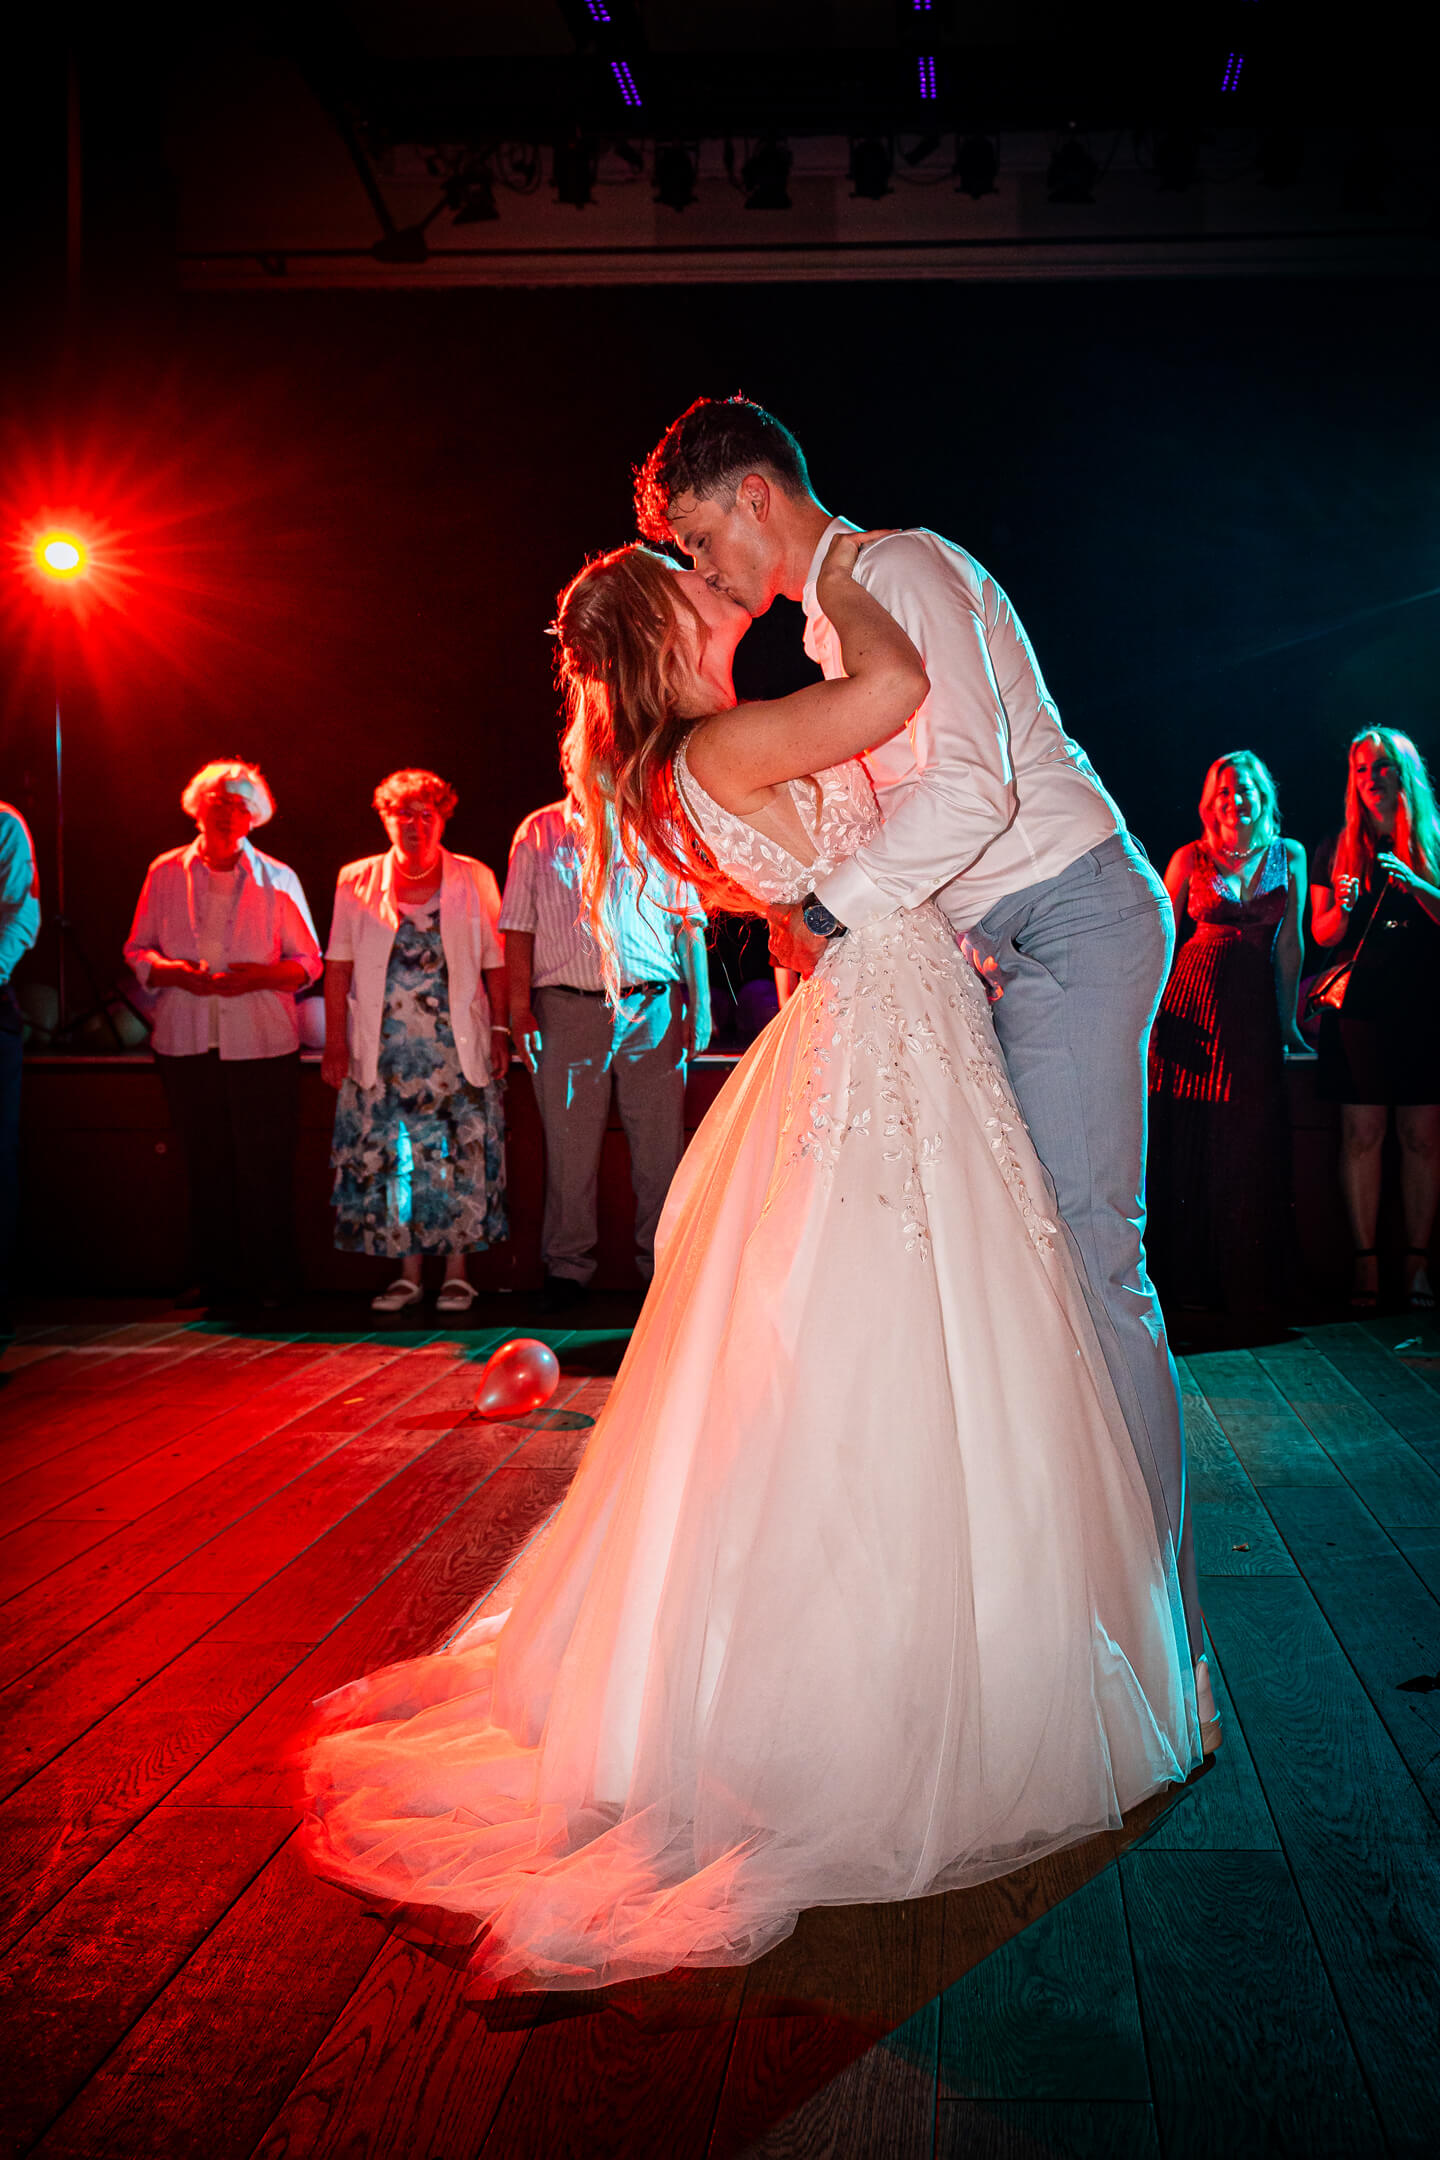 Kuss vom Brautpaar auf der Tanzfläche.